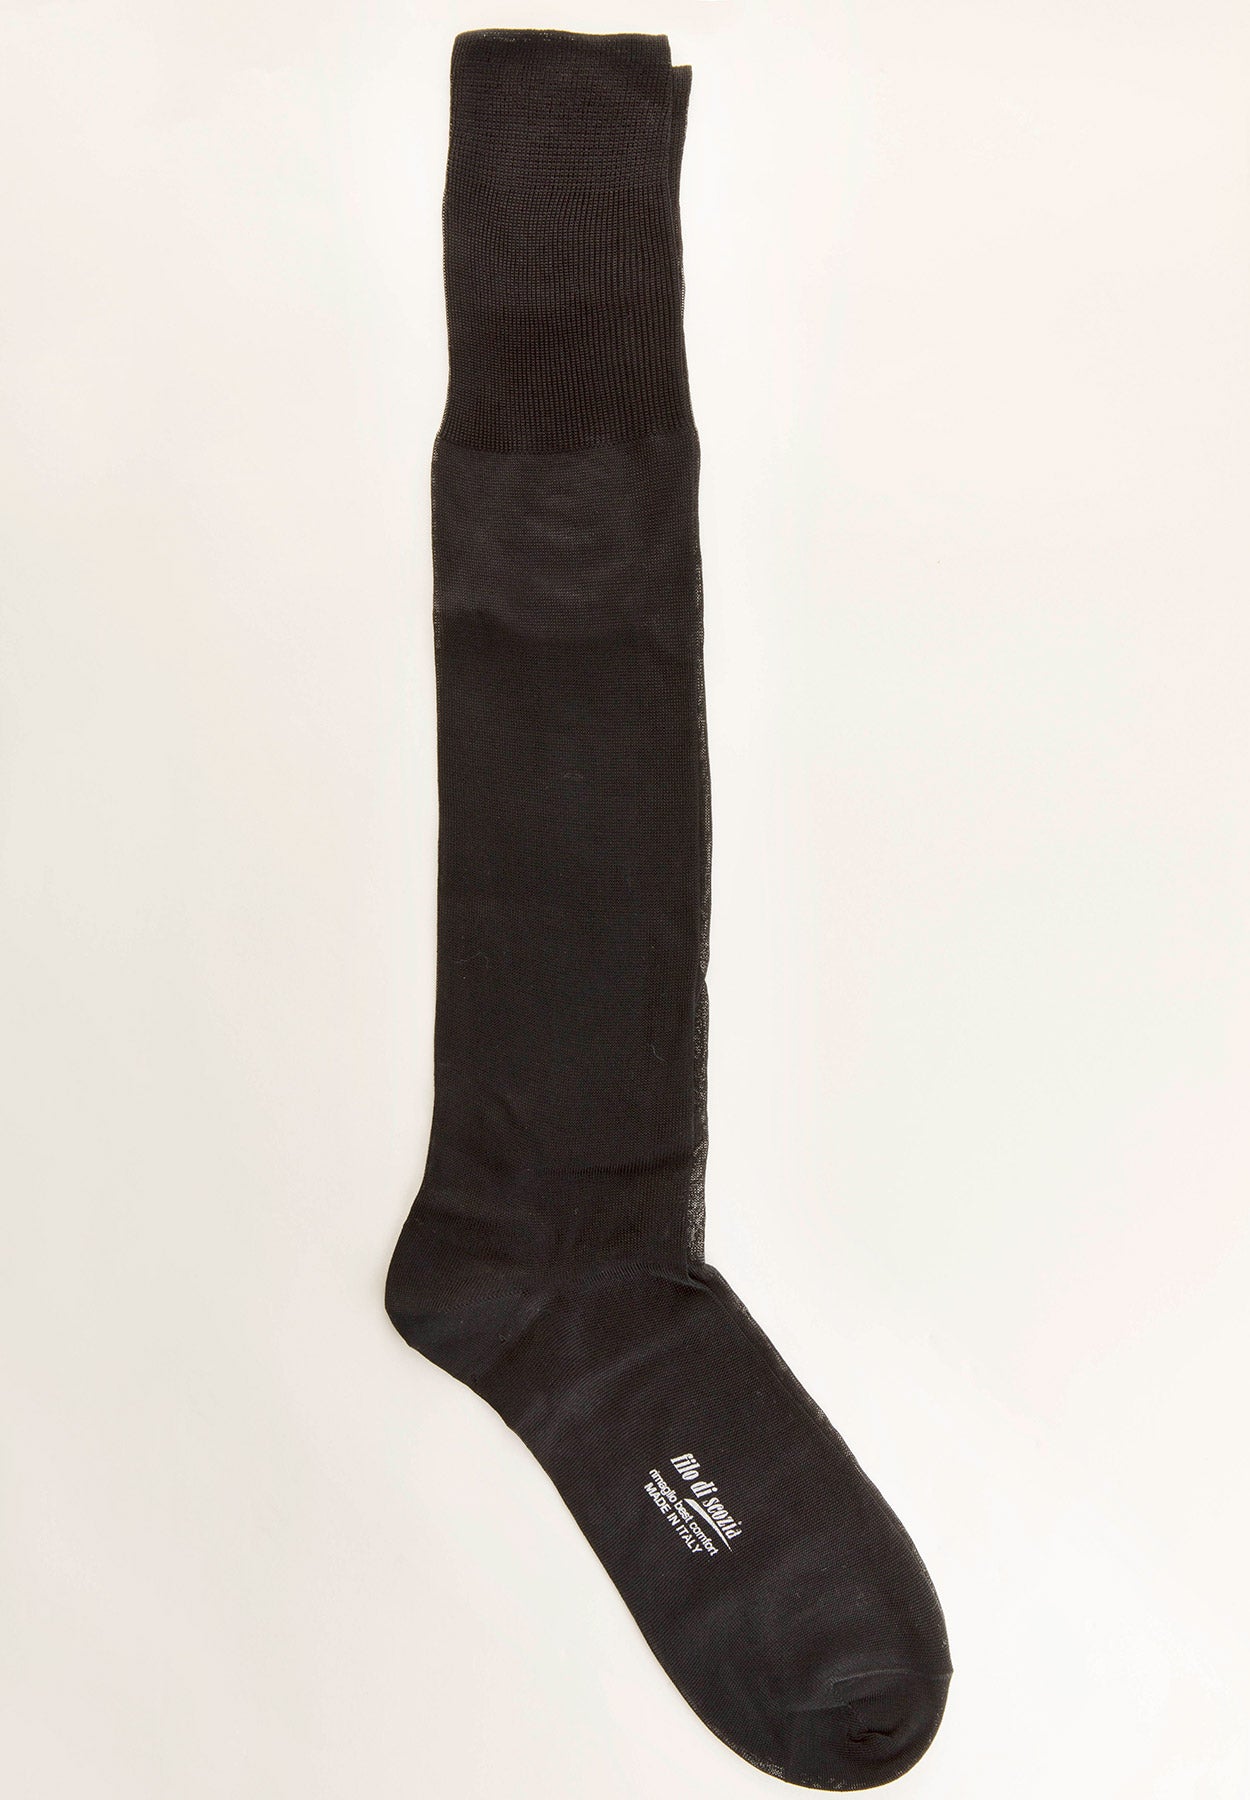 Black lisle long socks